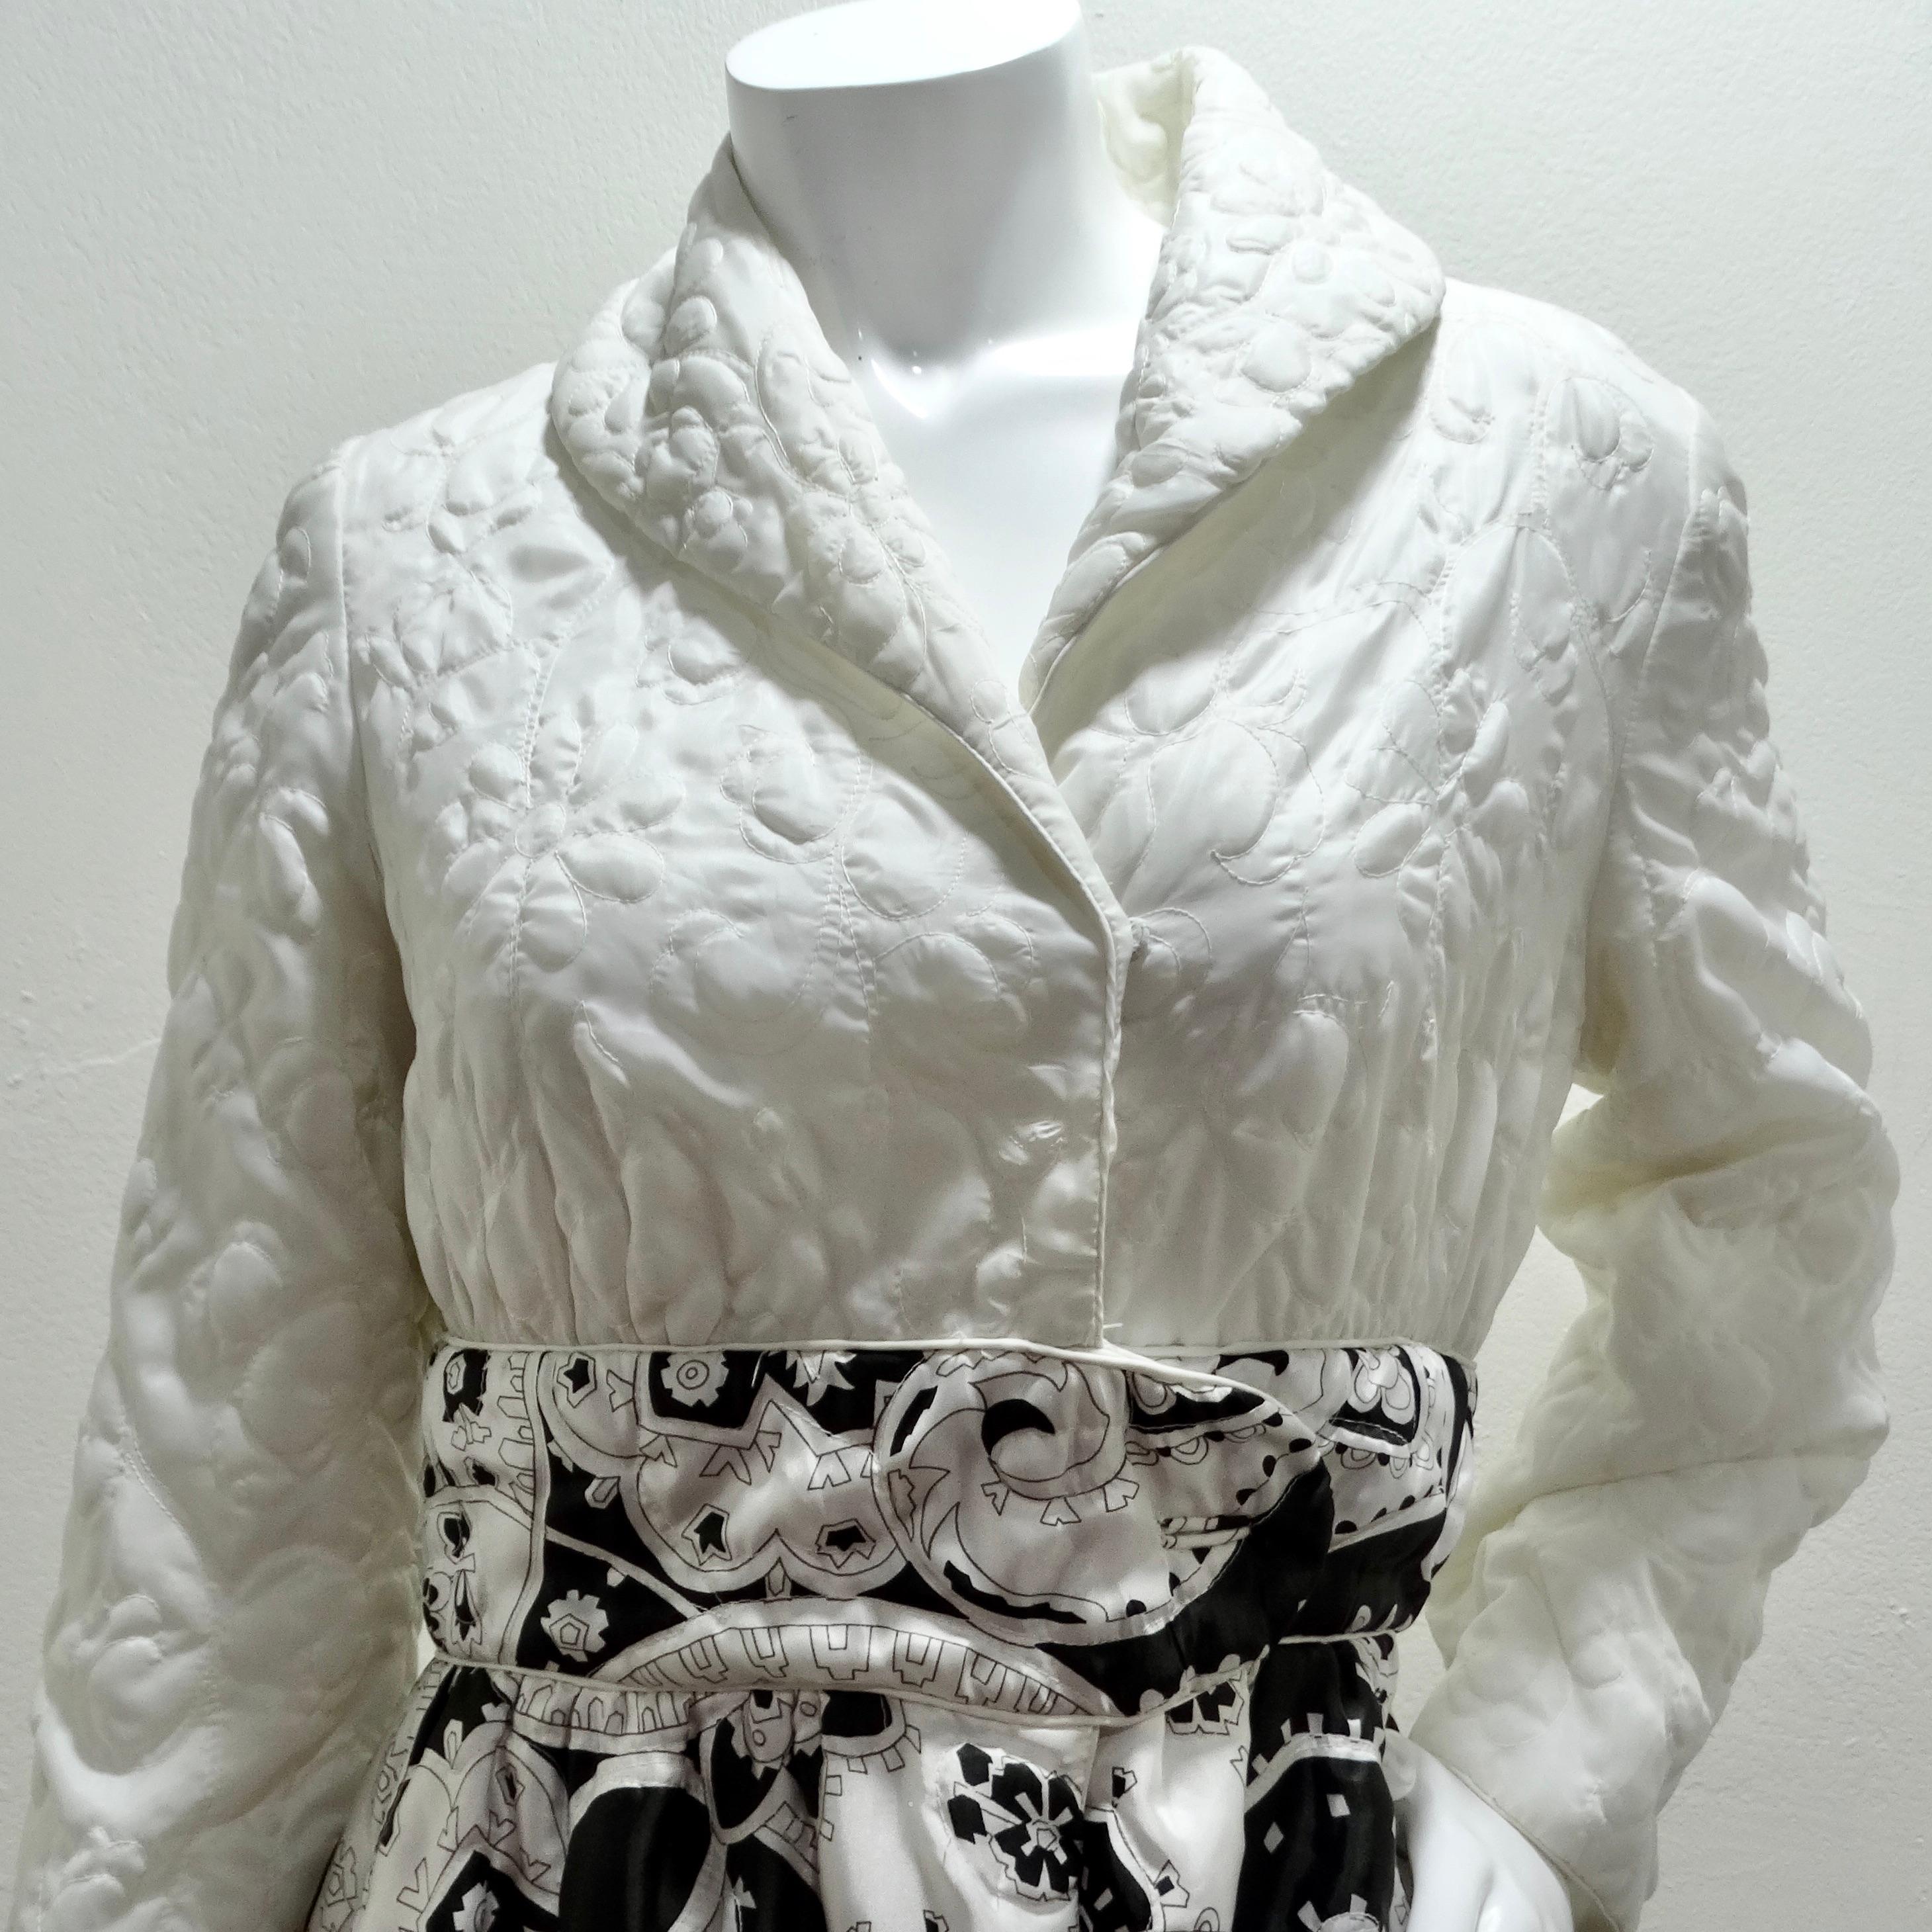 Wir präsentieren die atemberaubende schwarz-weiße gesteppte Robe aus den 1960er Jahren, ein vielseitiges und auffälliges Stück, das Vintage-Charme und Eleganz ausstrahlt. Diese mit viel Liebe zum Detail gefertigte, lange, wattierte Jacke/Bademantel